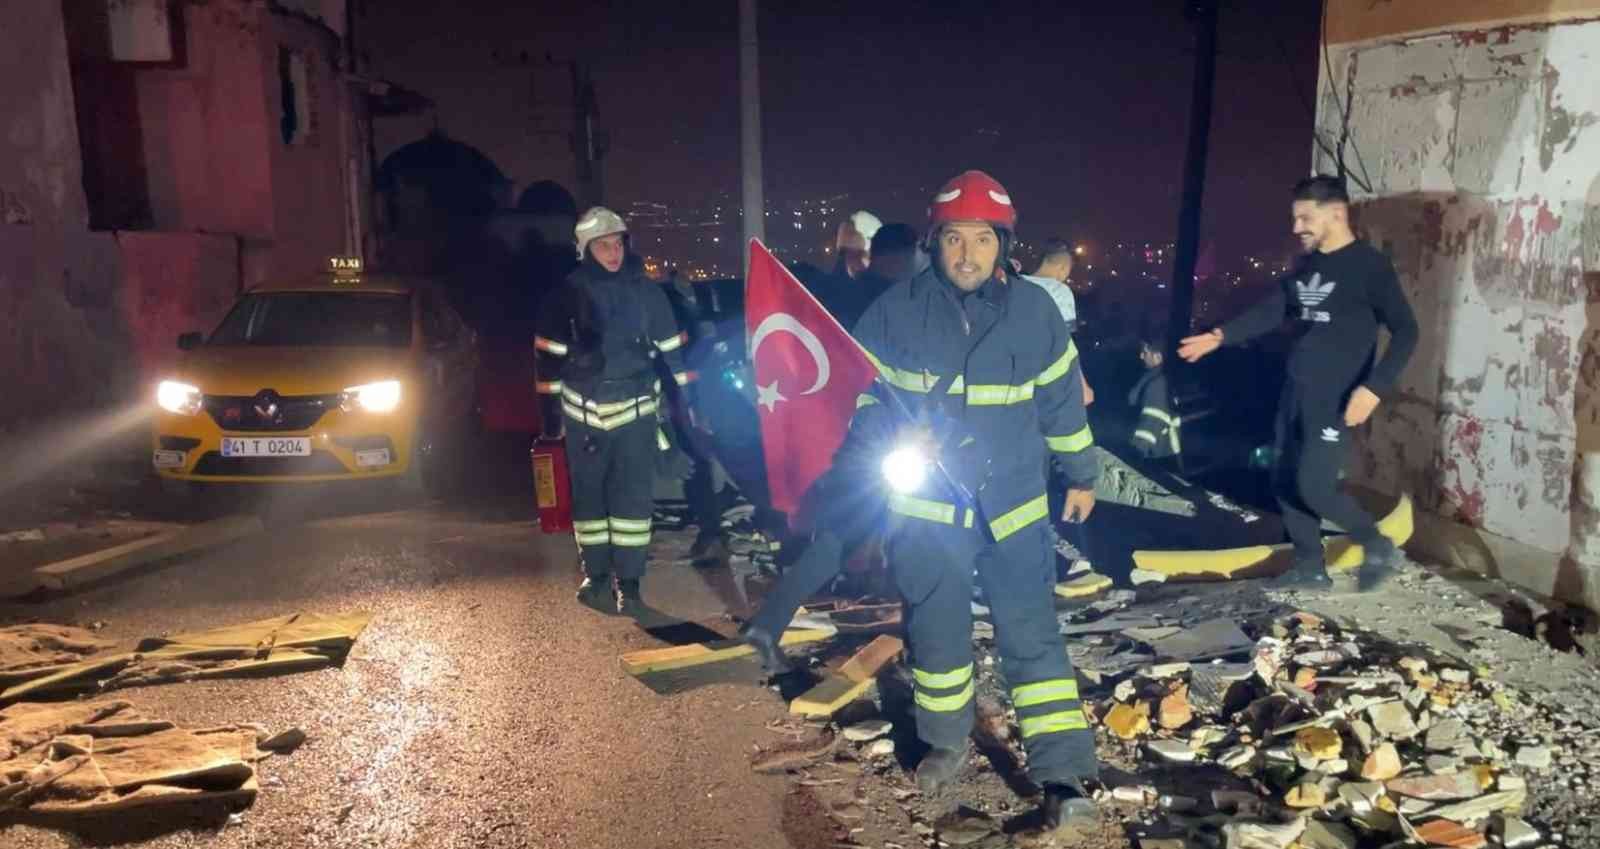 İtfaiye ekipleri, metruk binadaki Türk bayrağını yerde bırakmadı #kocaeli